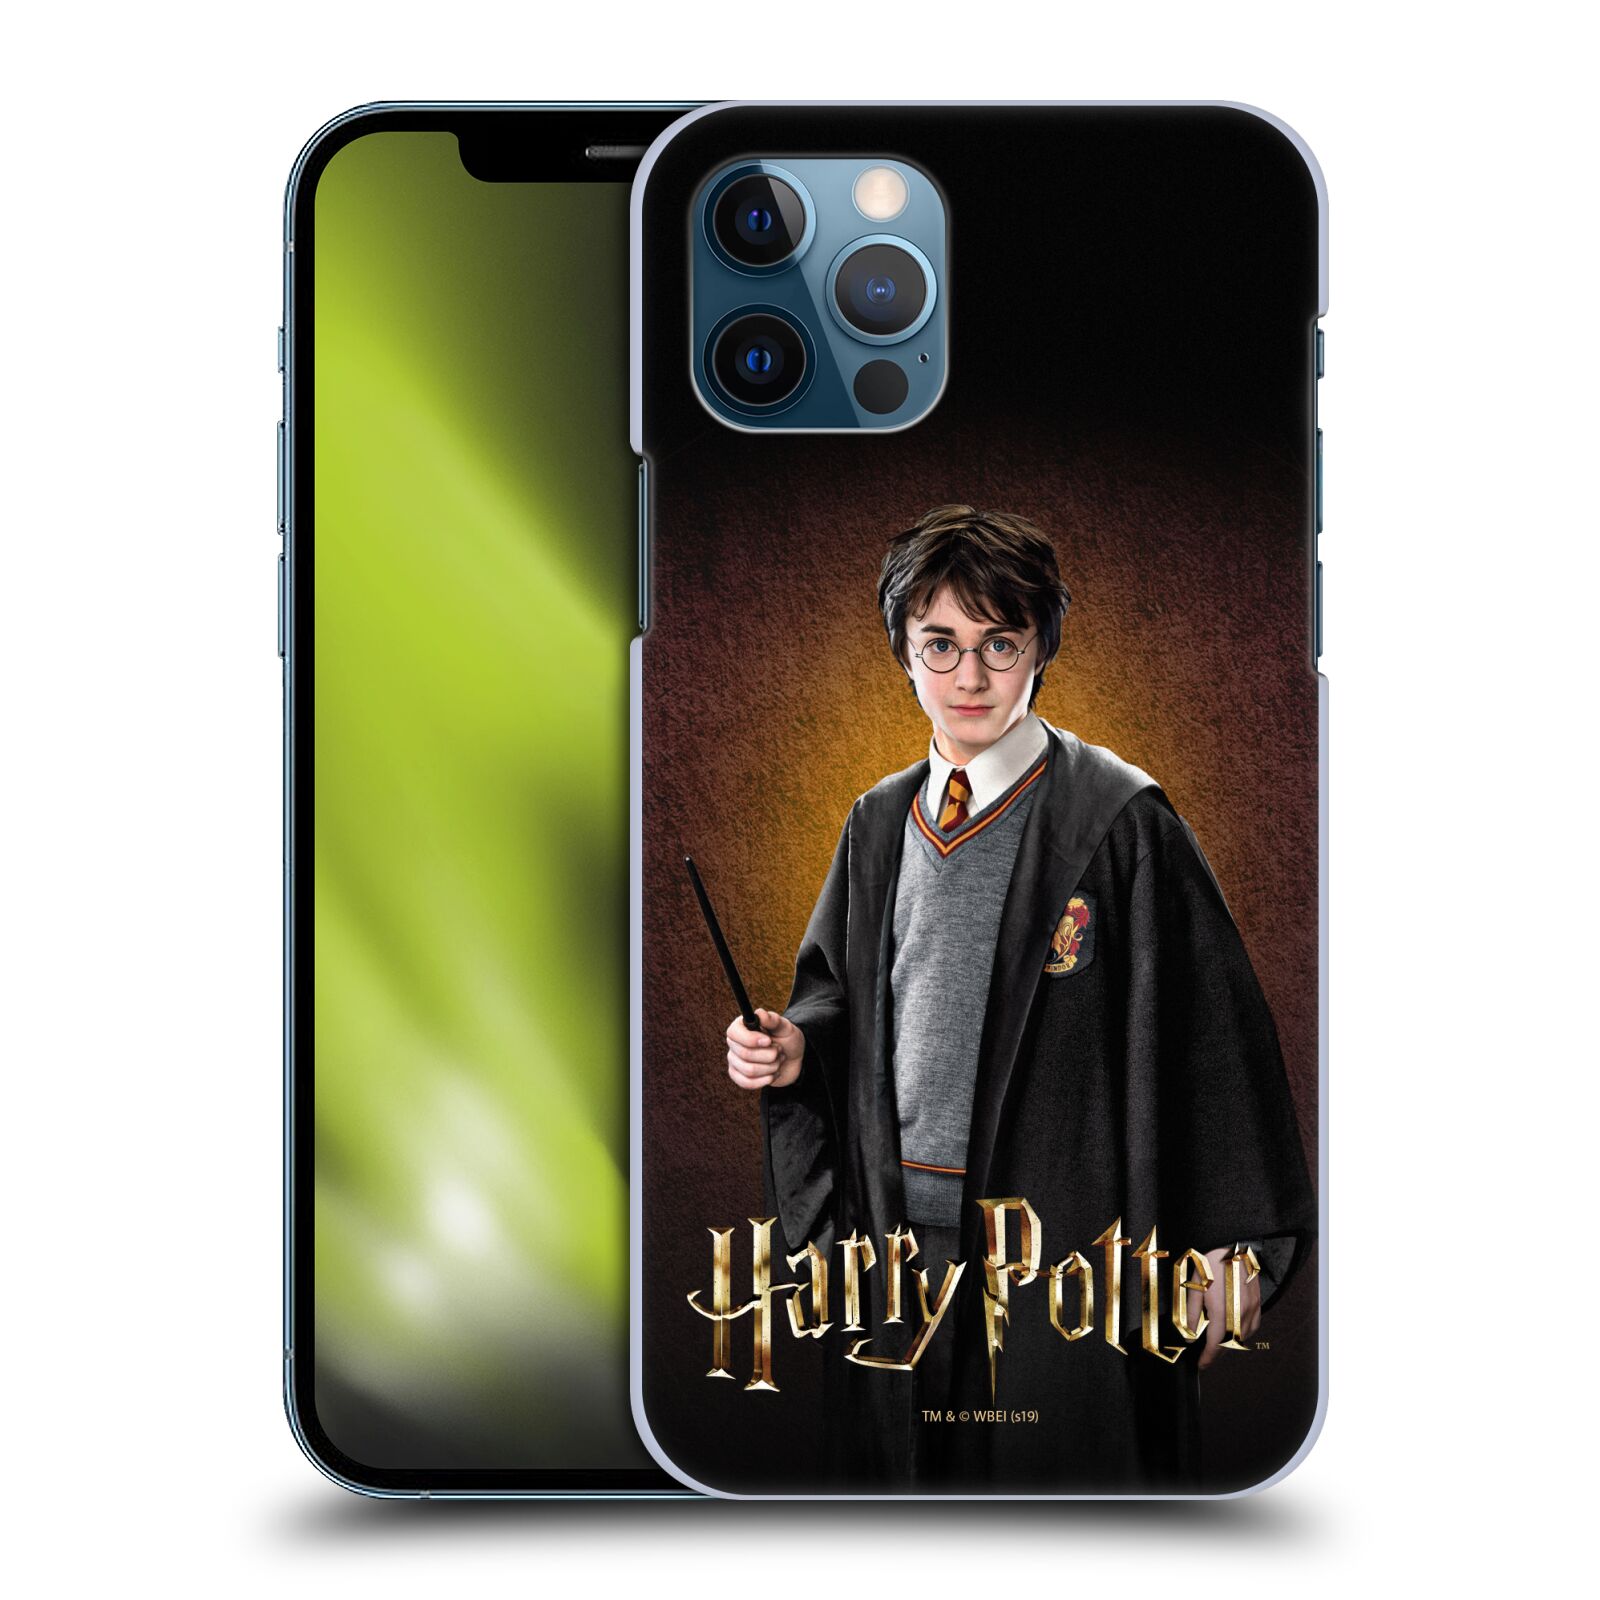 Plastové pouzdro na mobil Apple iPhone 12 / 12 Pro - Harry Potter - Malý Harry Potter - výprodej (Plastový kryt, pouzdro, obal na mobilní telefon Apple iPhone 12 / Apple iPhone 12 Pro (6,1") s licencovaným motivem Harry Potter - Malý Harry Potter)